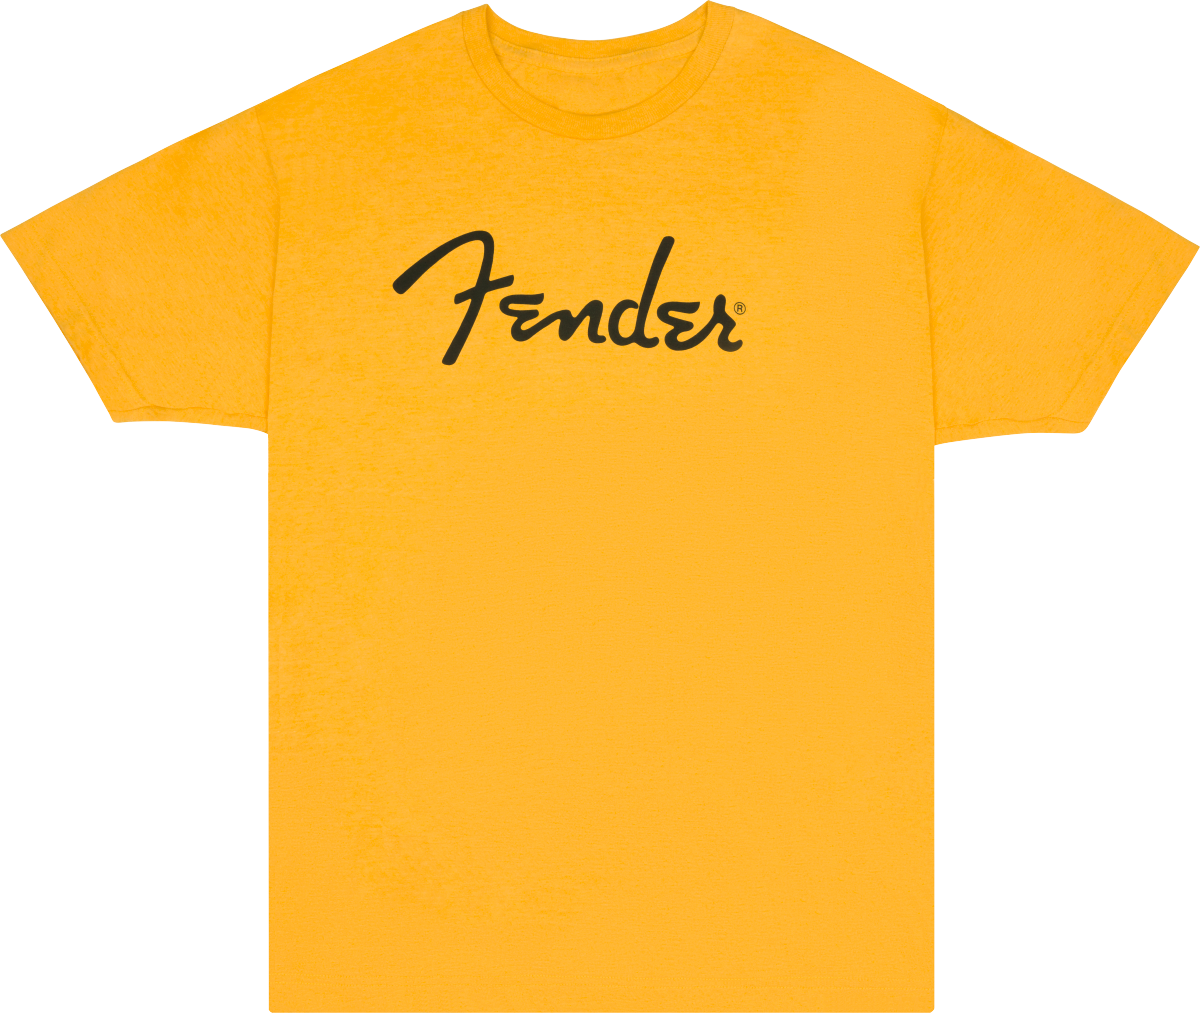 Fender Spaghetti Logo T-Shirt - Butterscotch